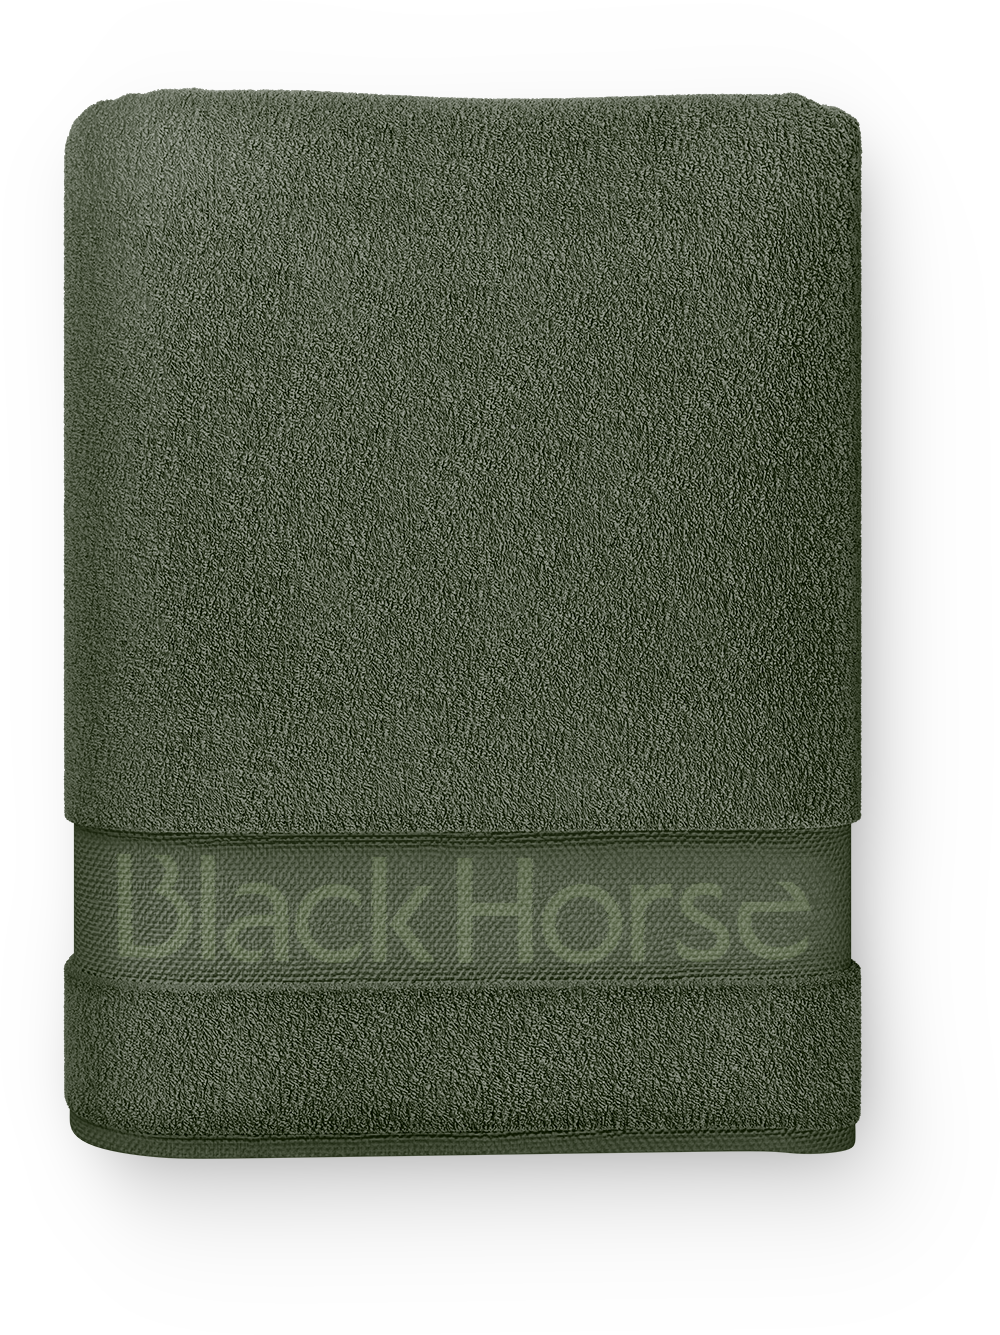 blackhorse_towel05